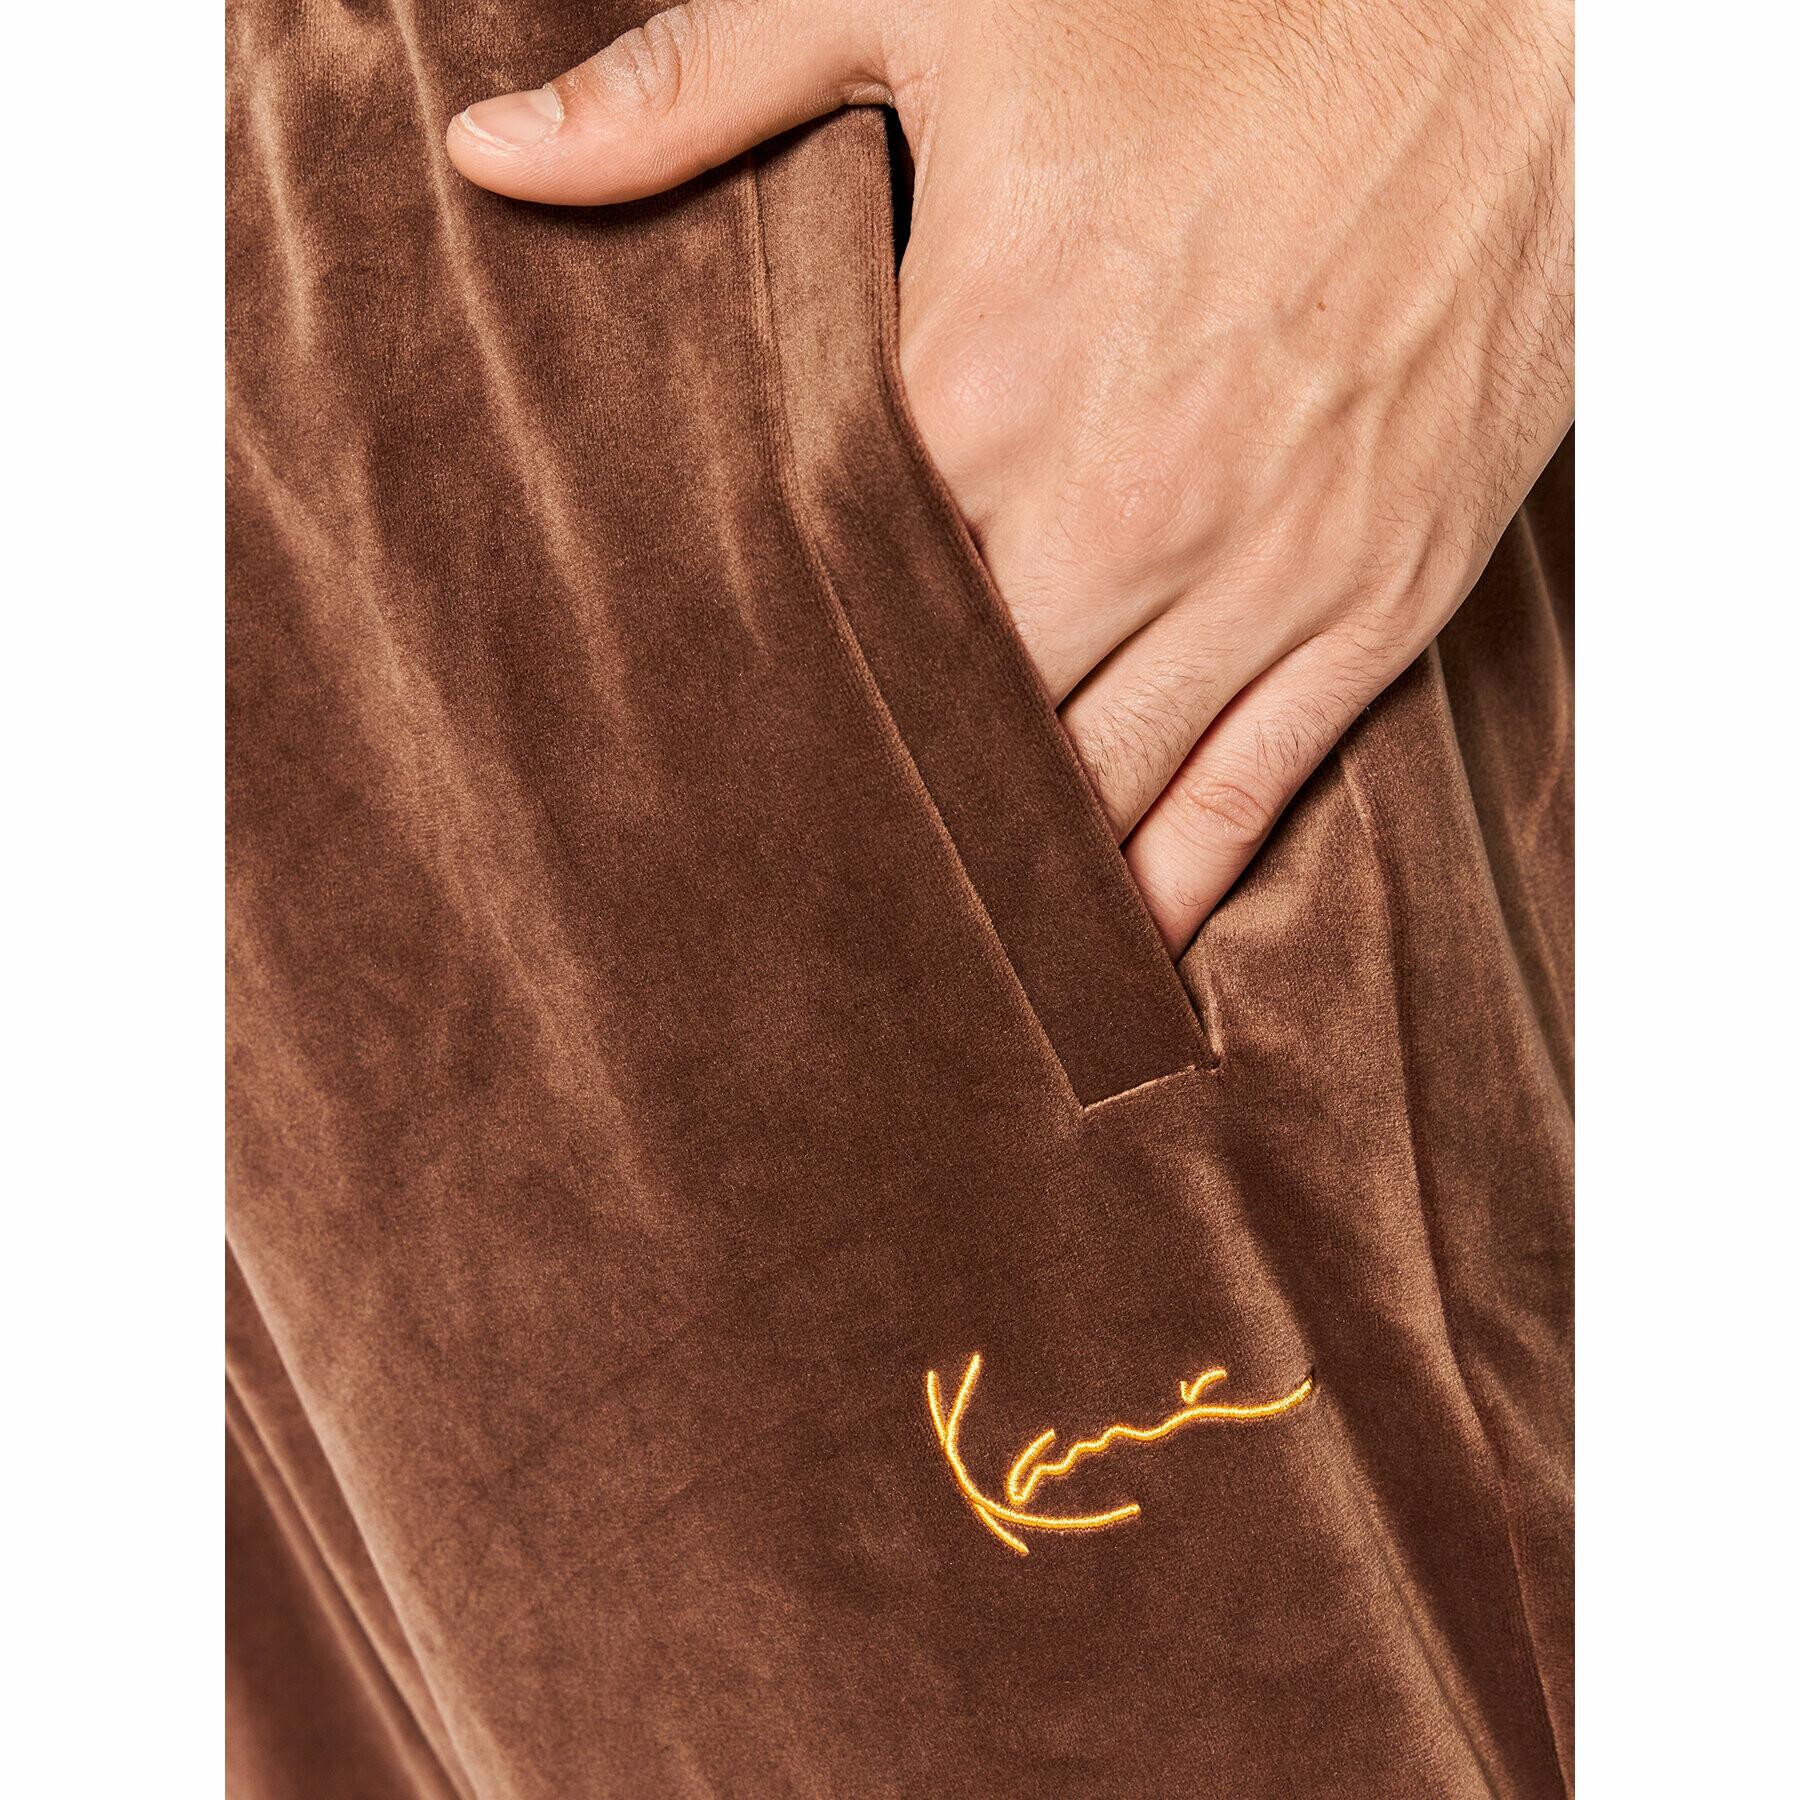 Pantalones de deporte Karl Kani Small Signature